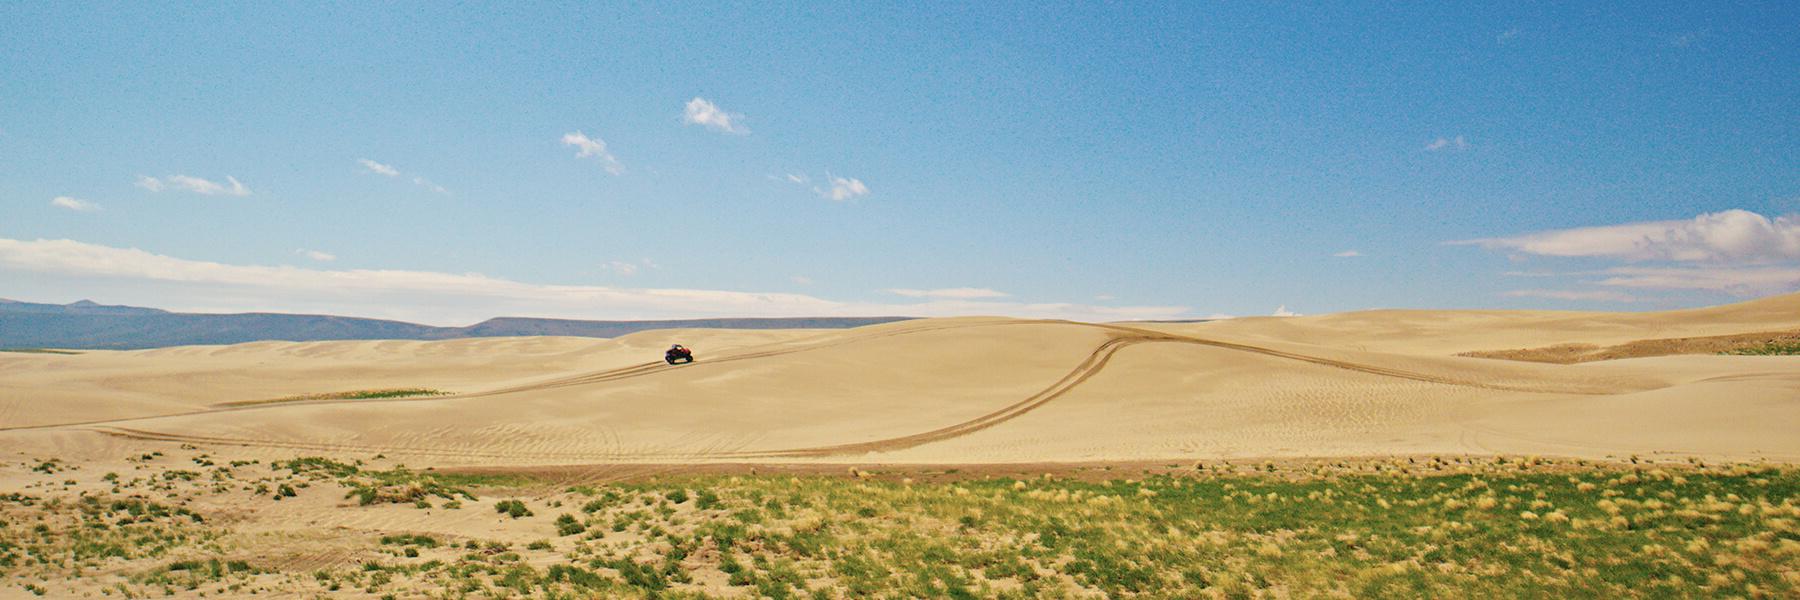 Killpecker Sand Dunes in Southwest Wyoming